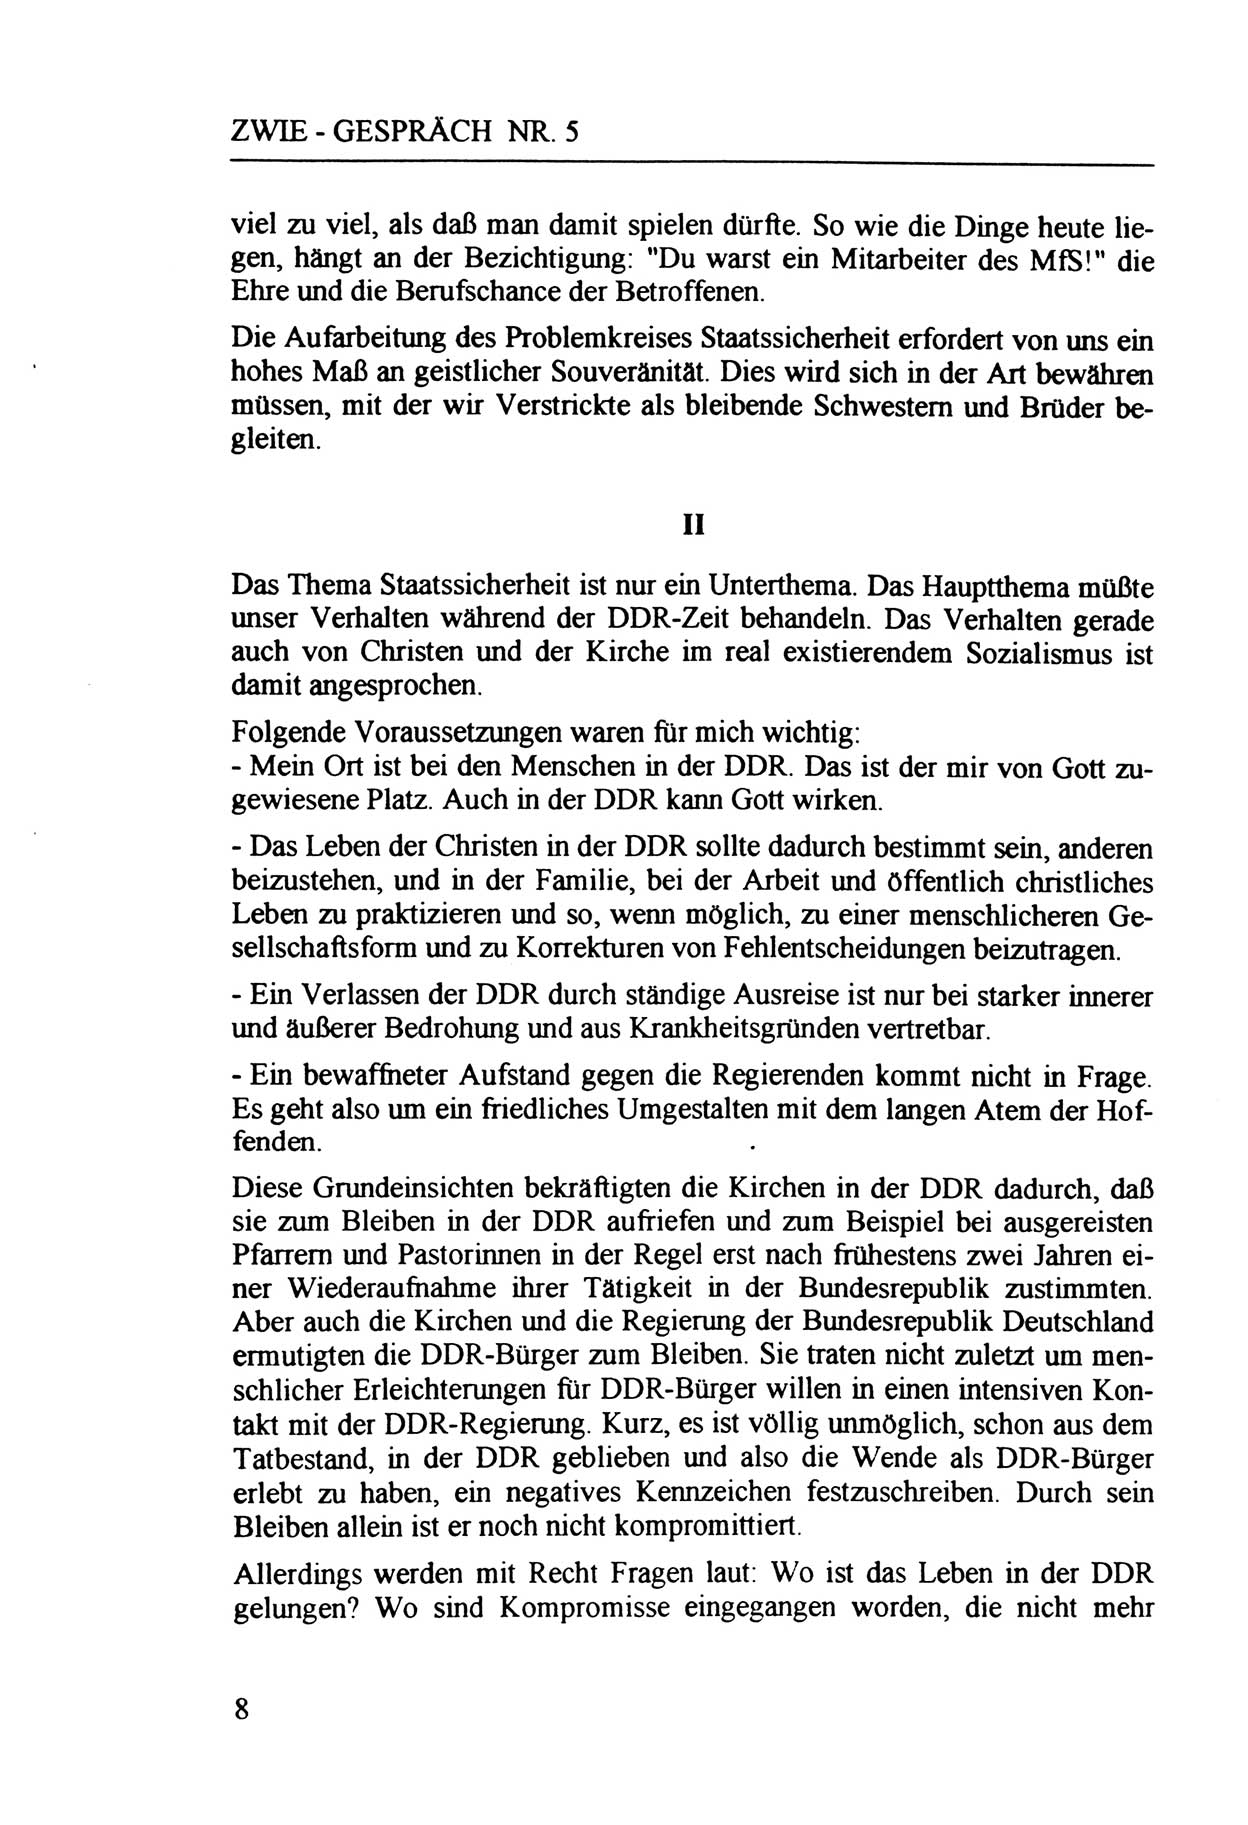 Zwie-Gespräch, Beiträge zur Aufarbeitung der Staatssicherheits-Vergangenheit [Deutsche Demokratische Republik (DDR)], Ausgabe Nr. 5, Berlin 1991, Seite 8 (Zwie-Gespr. Ausg. 5 1991, S. 8)